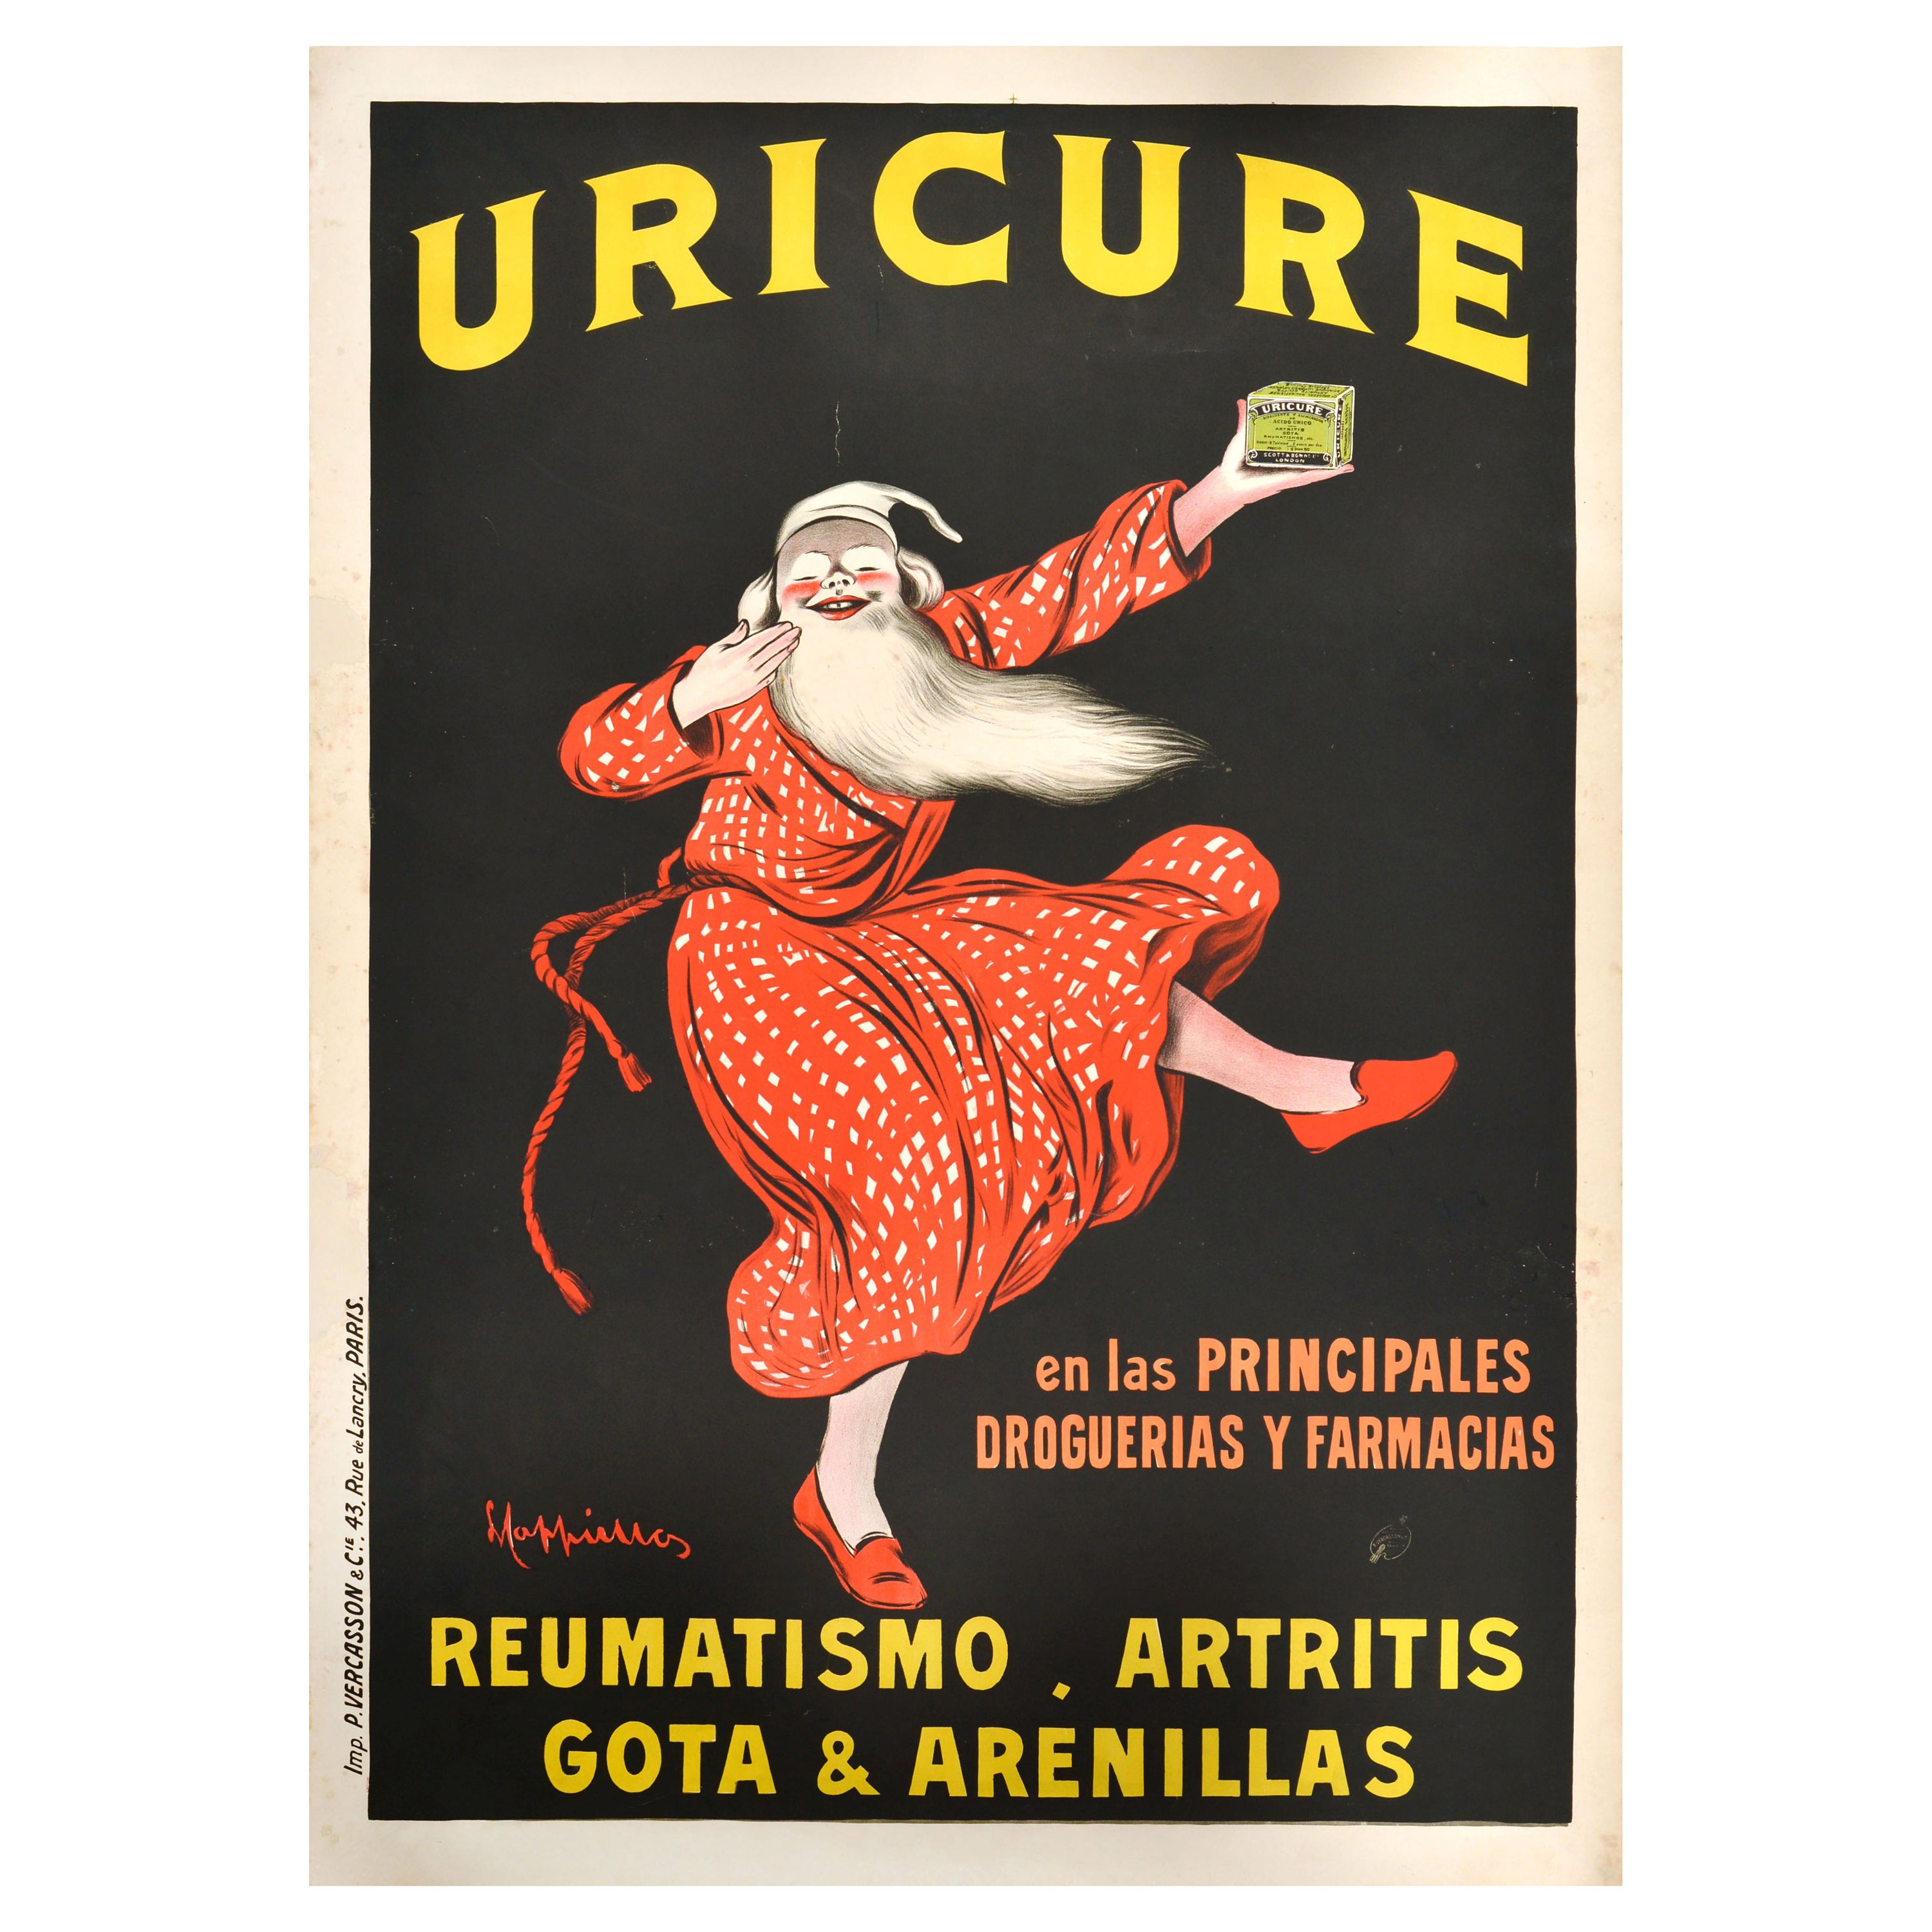 Original Antique Advertising Poster Uricure Medicine Leonetto Cappiello Design For Sale